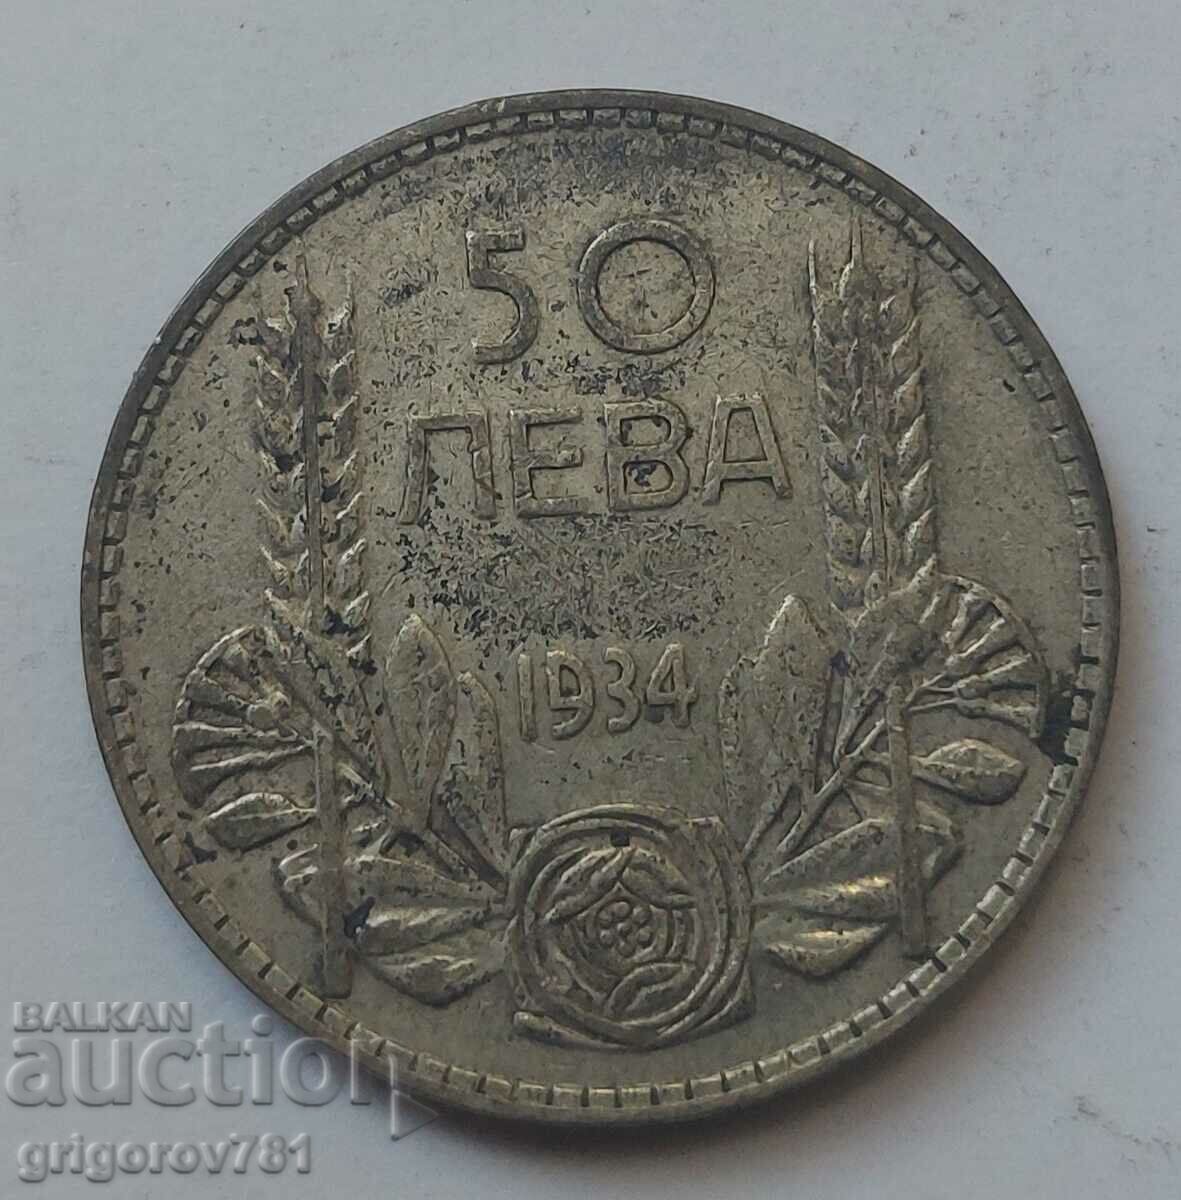 50 leva argint Bulgaria 1934 - monedă de argint #17